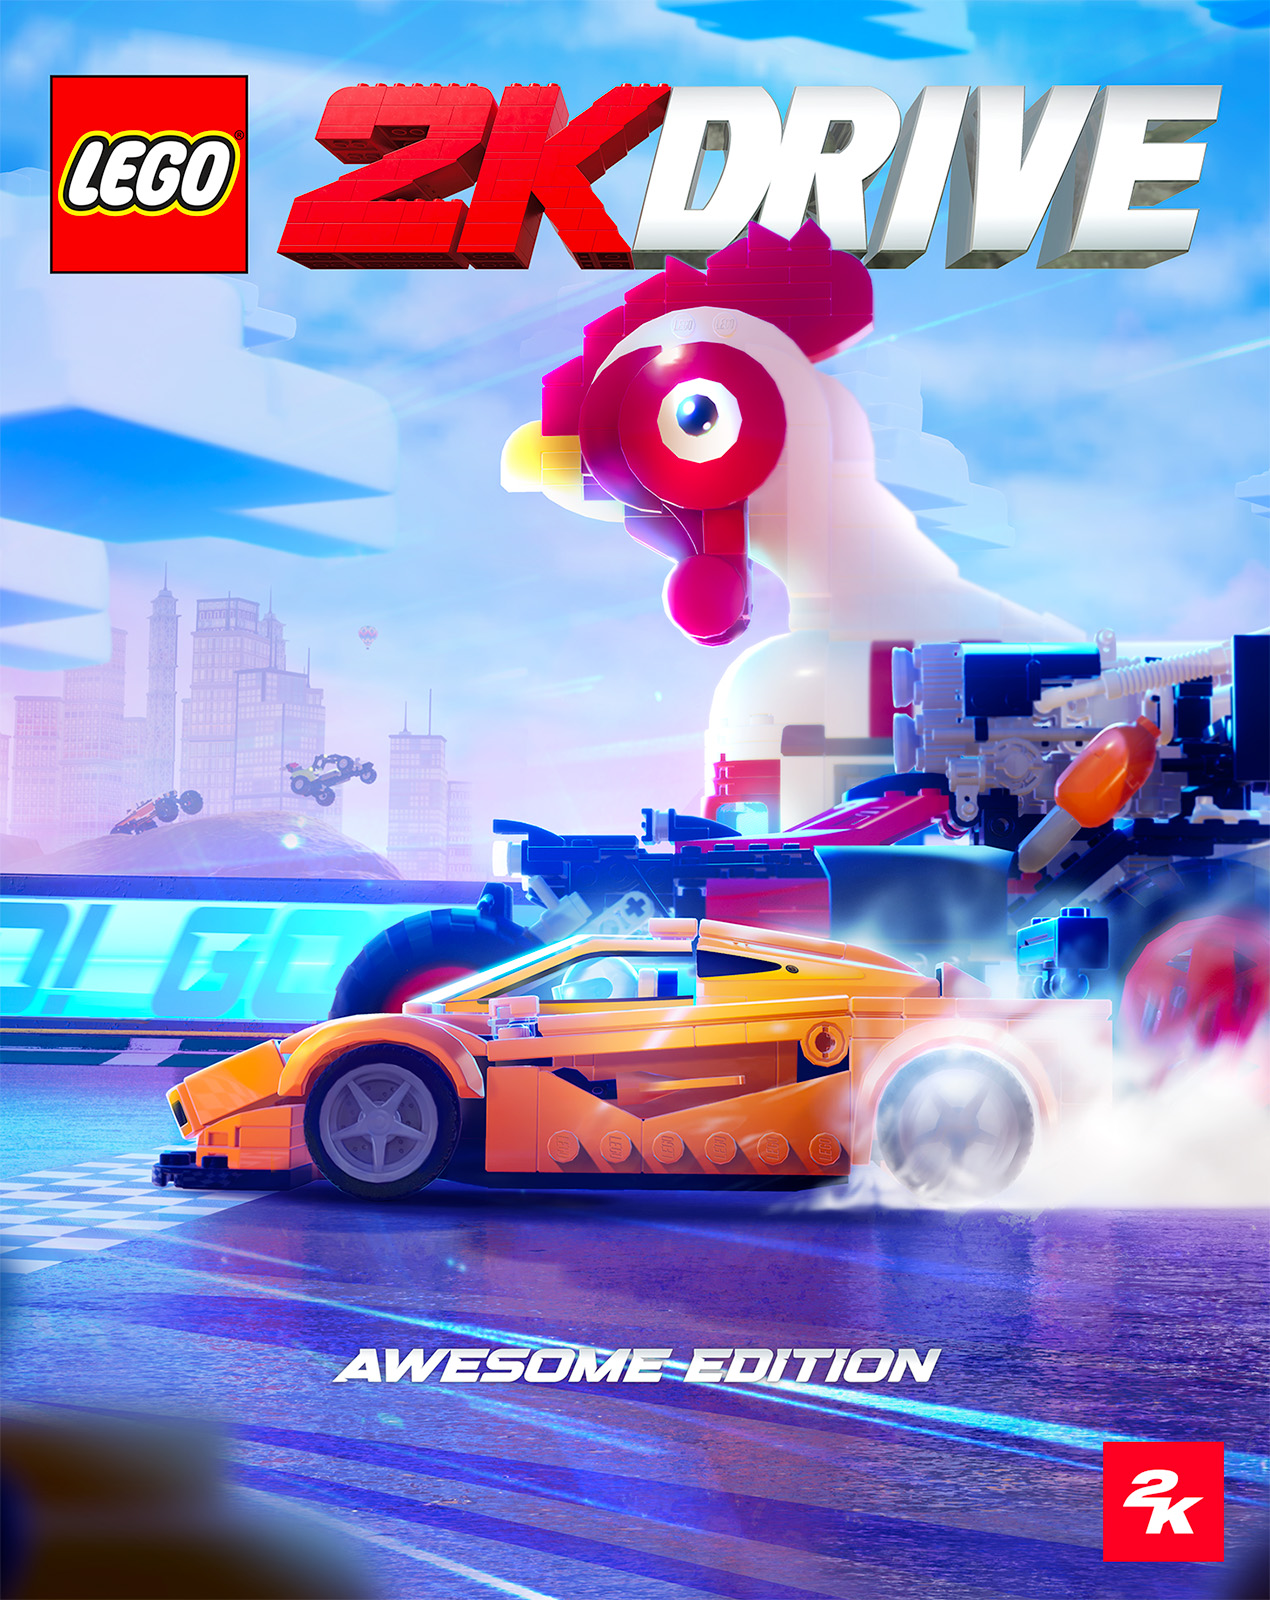 LEGO 2K Drive: die volgende LEGO videospeletjie word aangekondig vir 19 Mei 2023